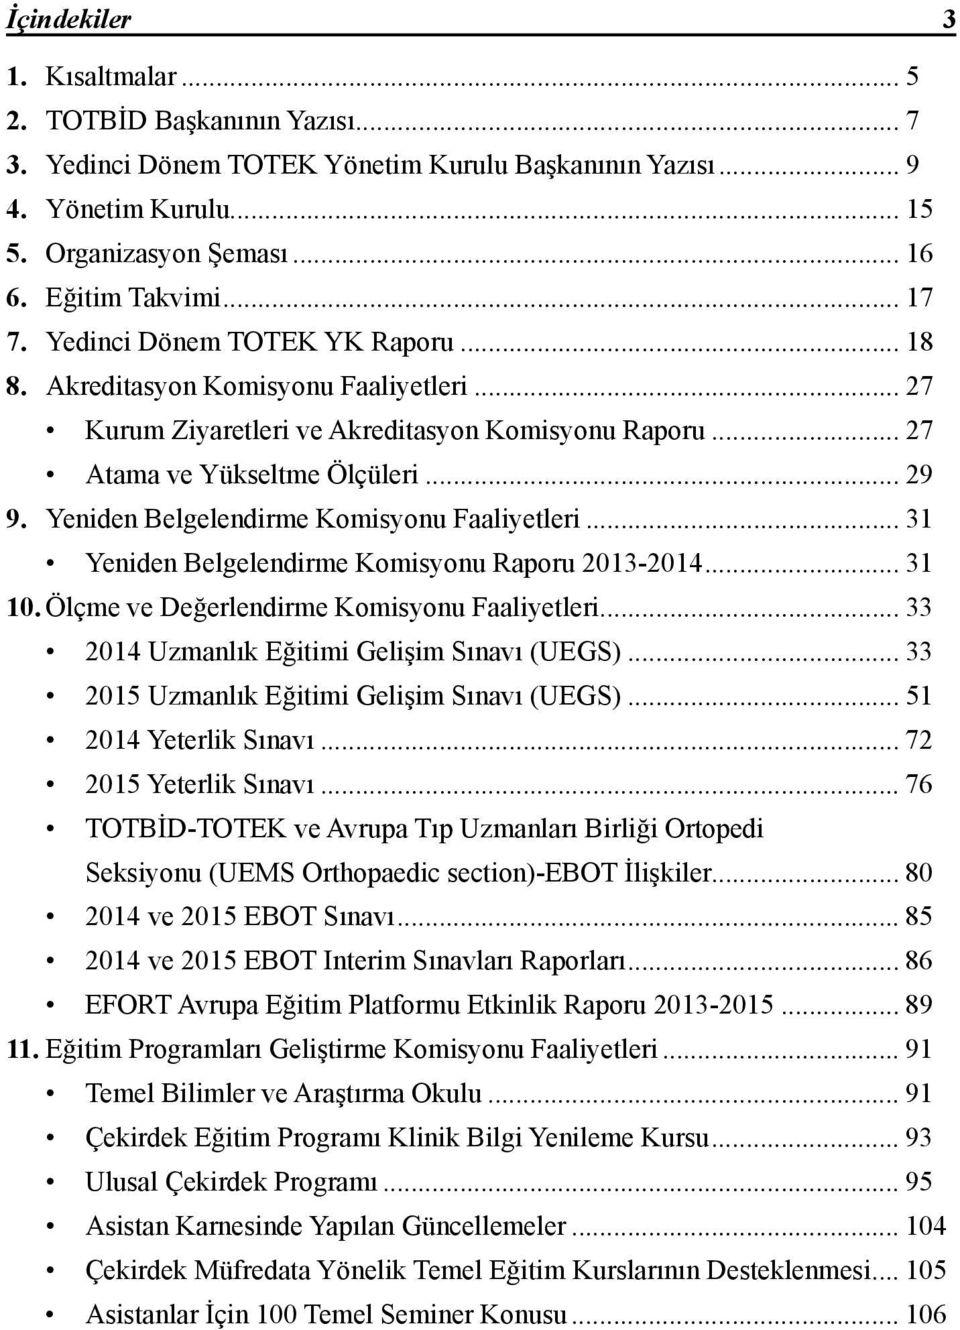 Yeniden Belgelendirme Komisyonu Faaliyetleri... 31 Yeniden Belgelendirme Komisyonu Raporu 2013-2014... 31 10. Ölçme ve Değerlendirme Komisyonu Faaliyetleri.